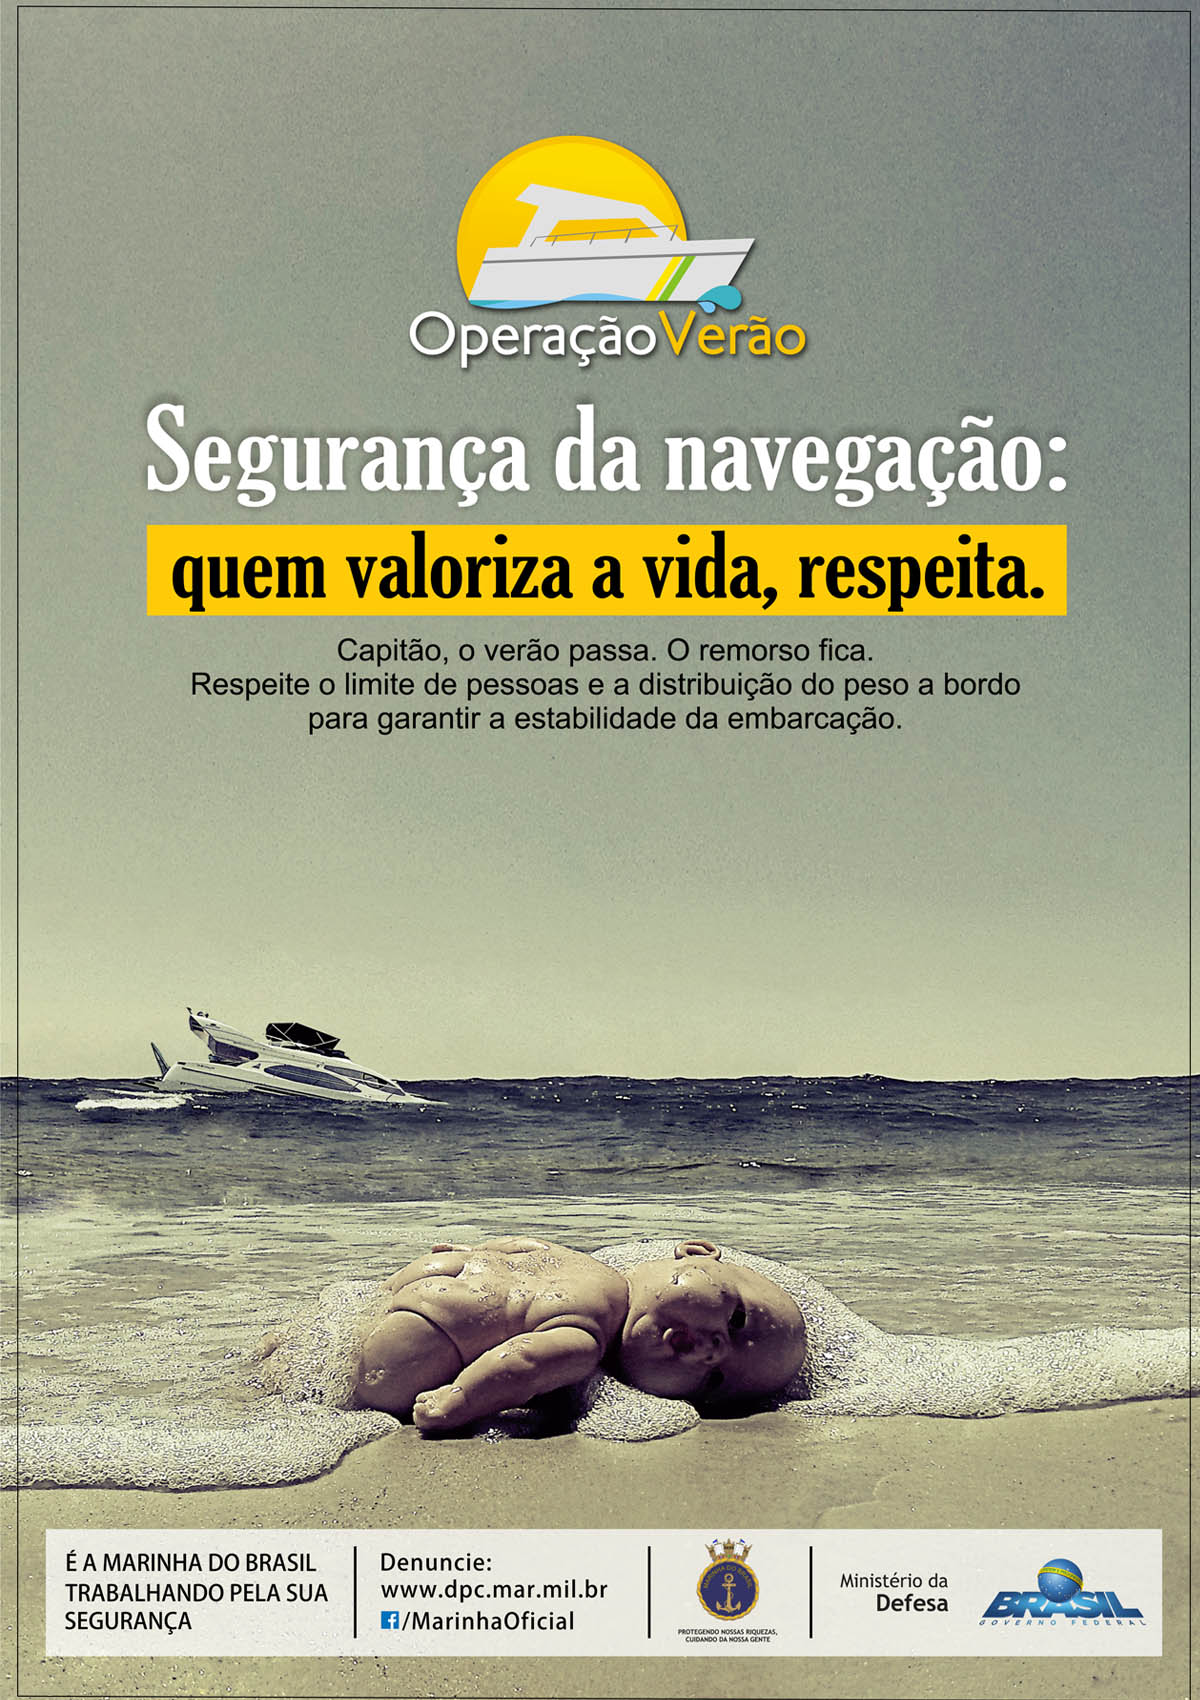 Marinha do Brasil inicia Operação Verão 2018/2019. Imagem: Marinha do Brasil/DPC.